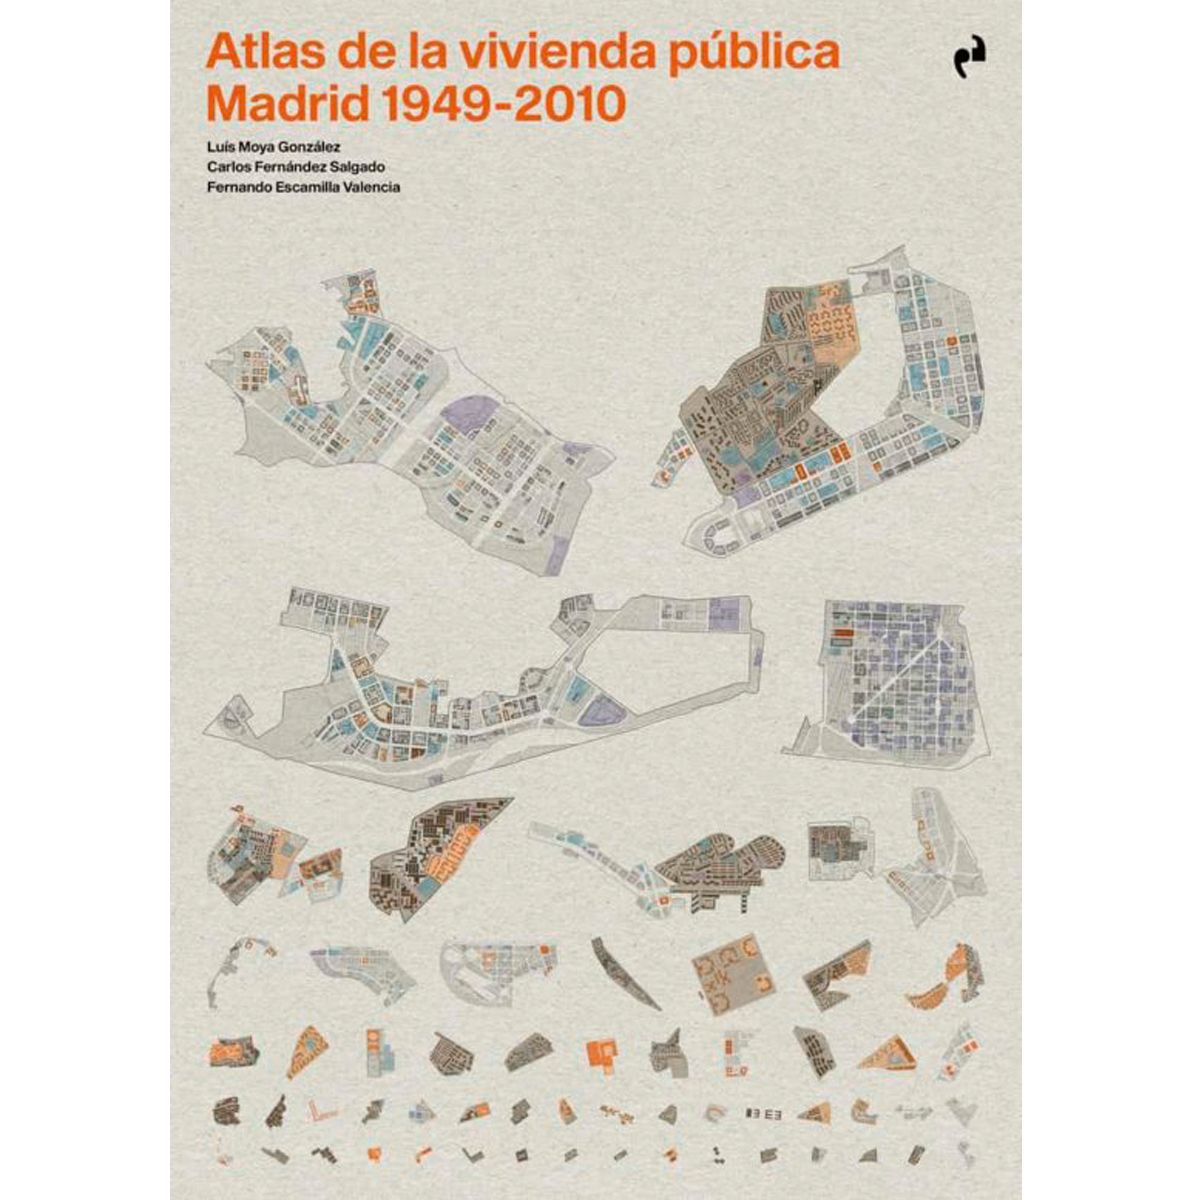 Atlas de la vivienda pública